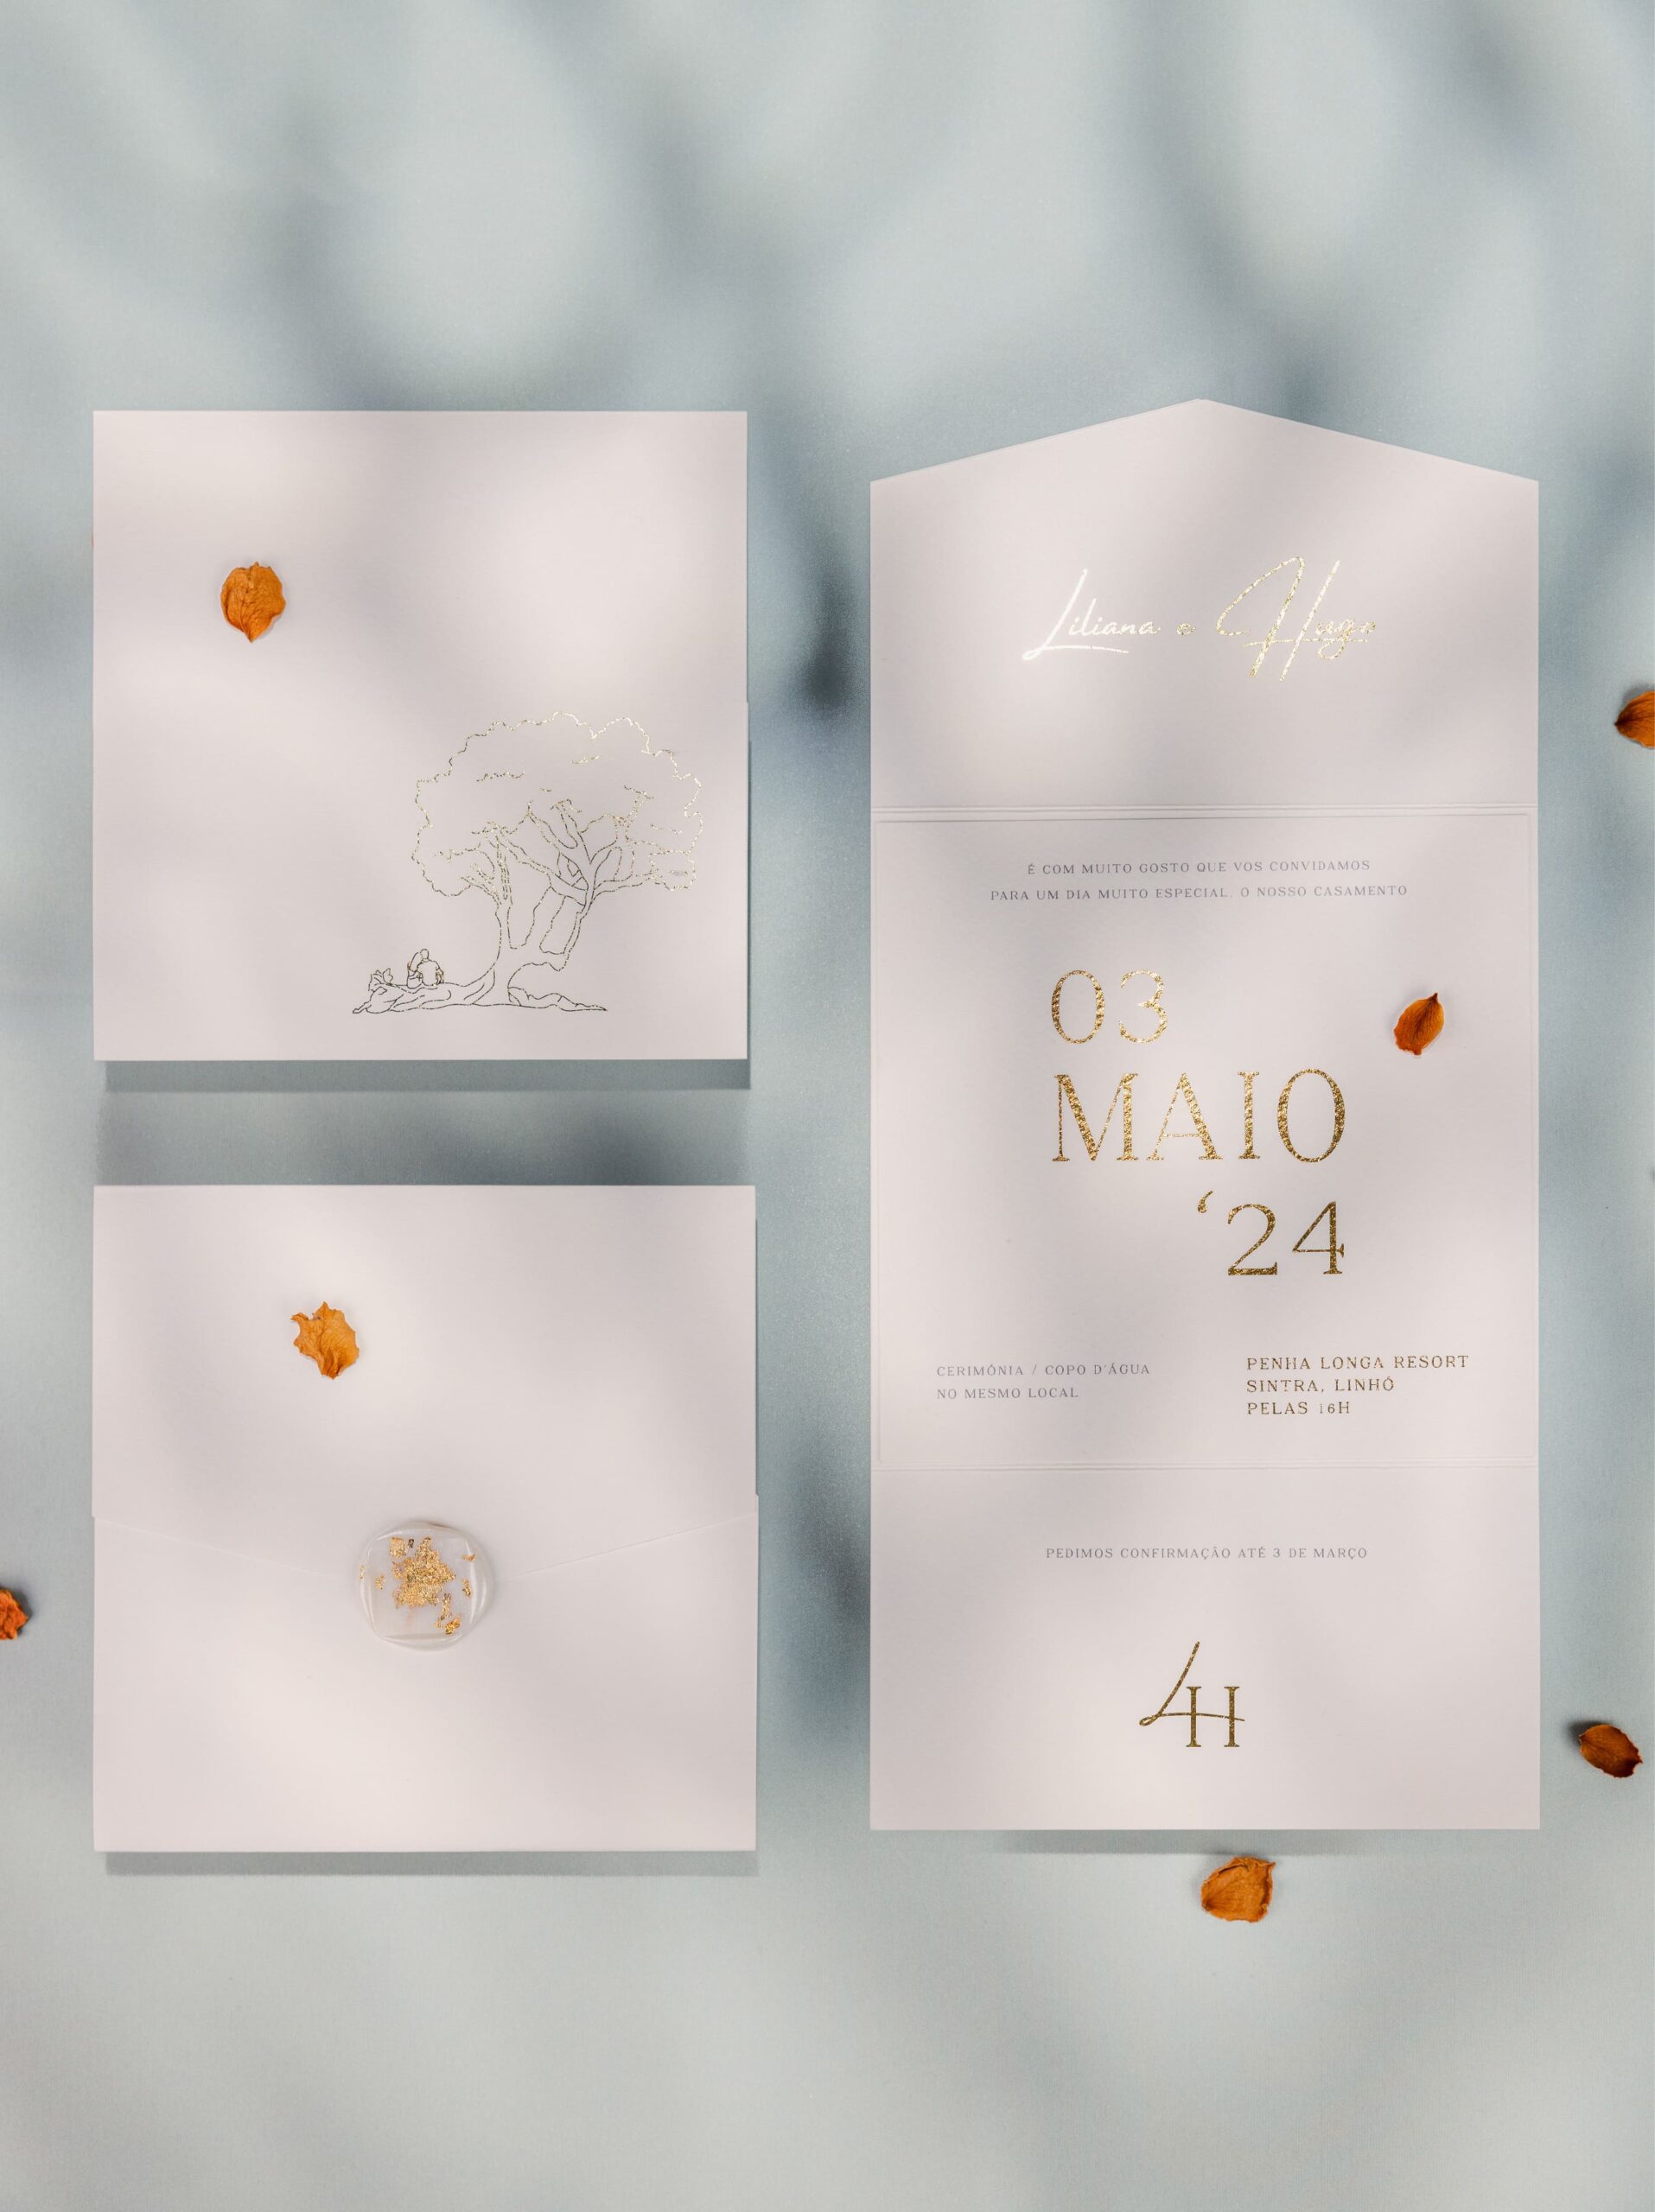 Convite de Casamento com detalhes em dourado e envelope com lacre em branco e detalhes em dourado